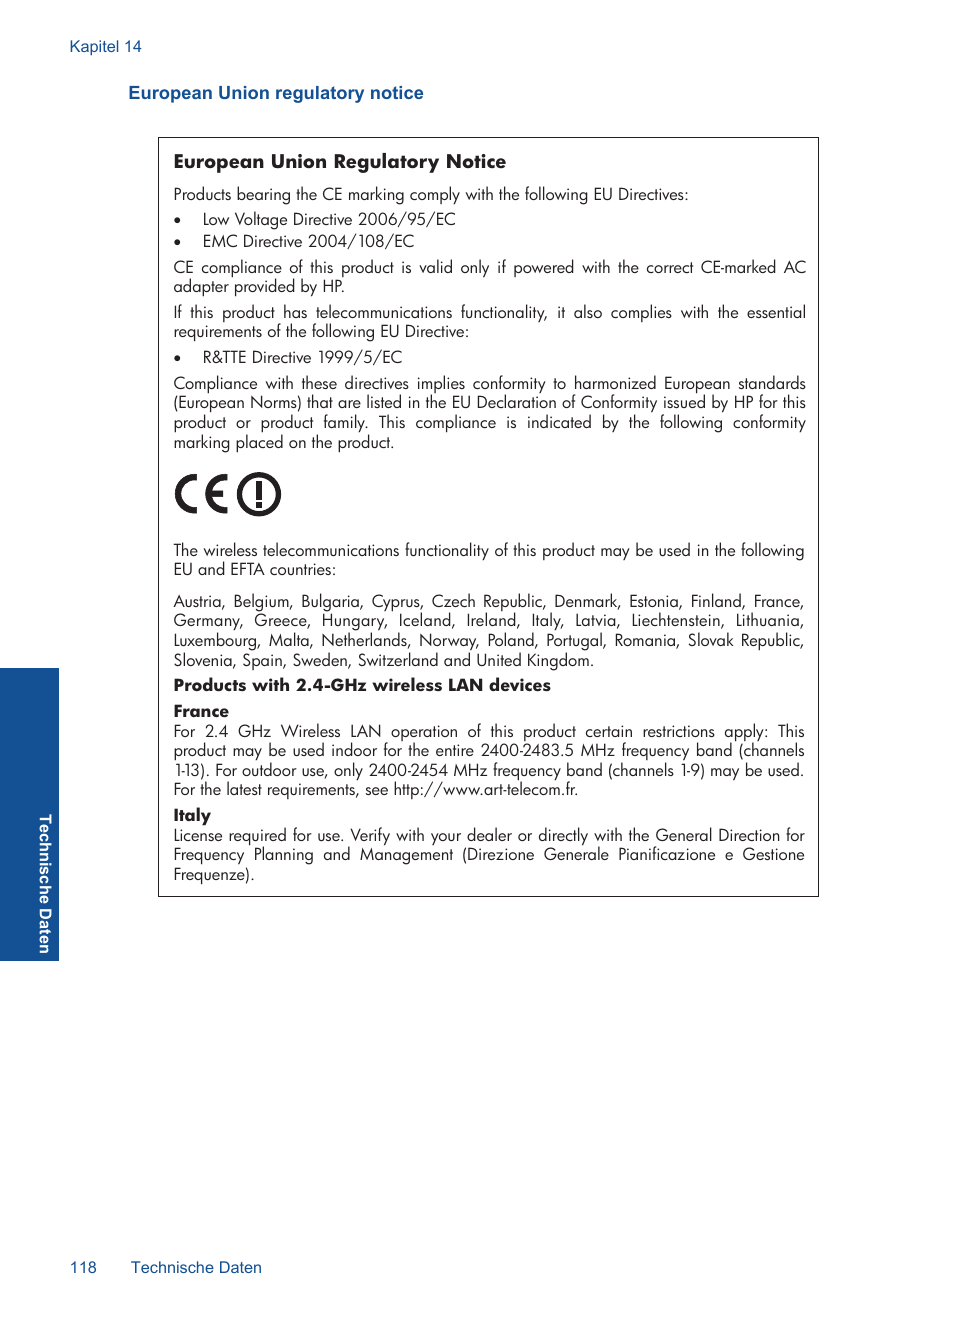 European union regulatory notice | HP Photosmart C4780 Benutzerhandbuch | Seite 121 / 125